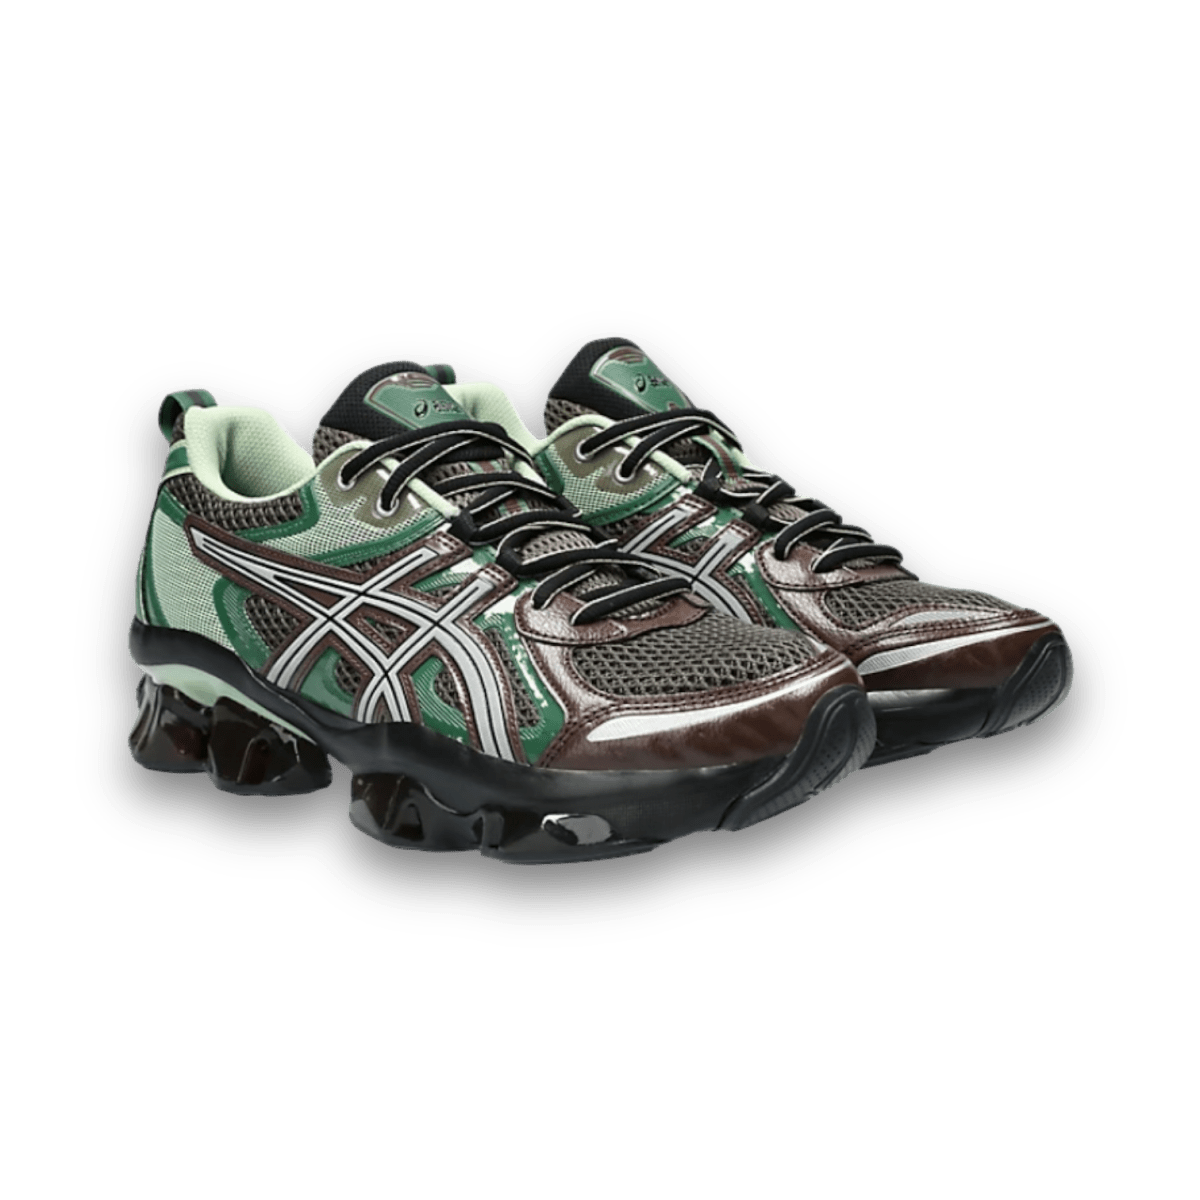 Asics Quantum Kinetic - Brown & Shamrock Green - Low Sneaker - Jawns on Fire Sneakers & Streetwear